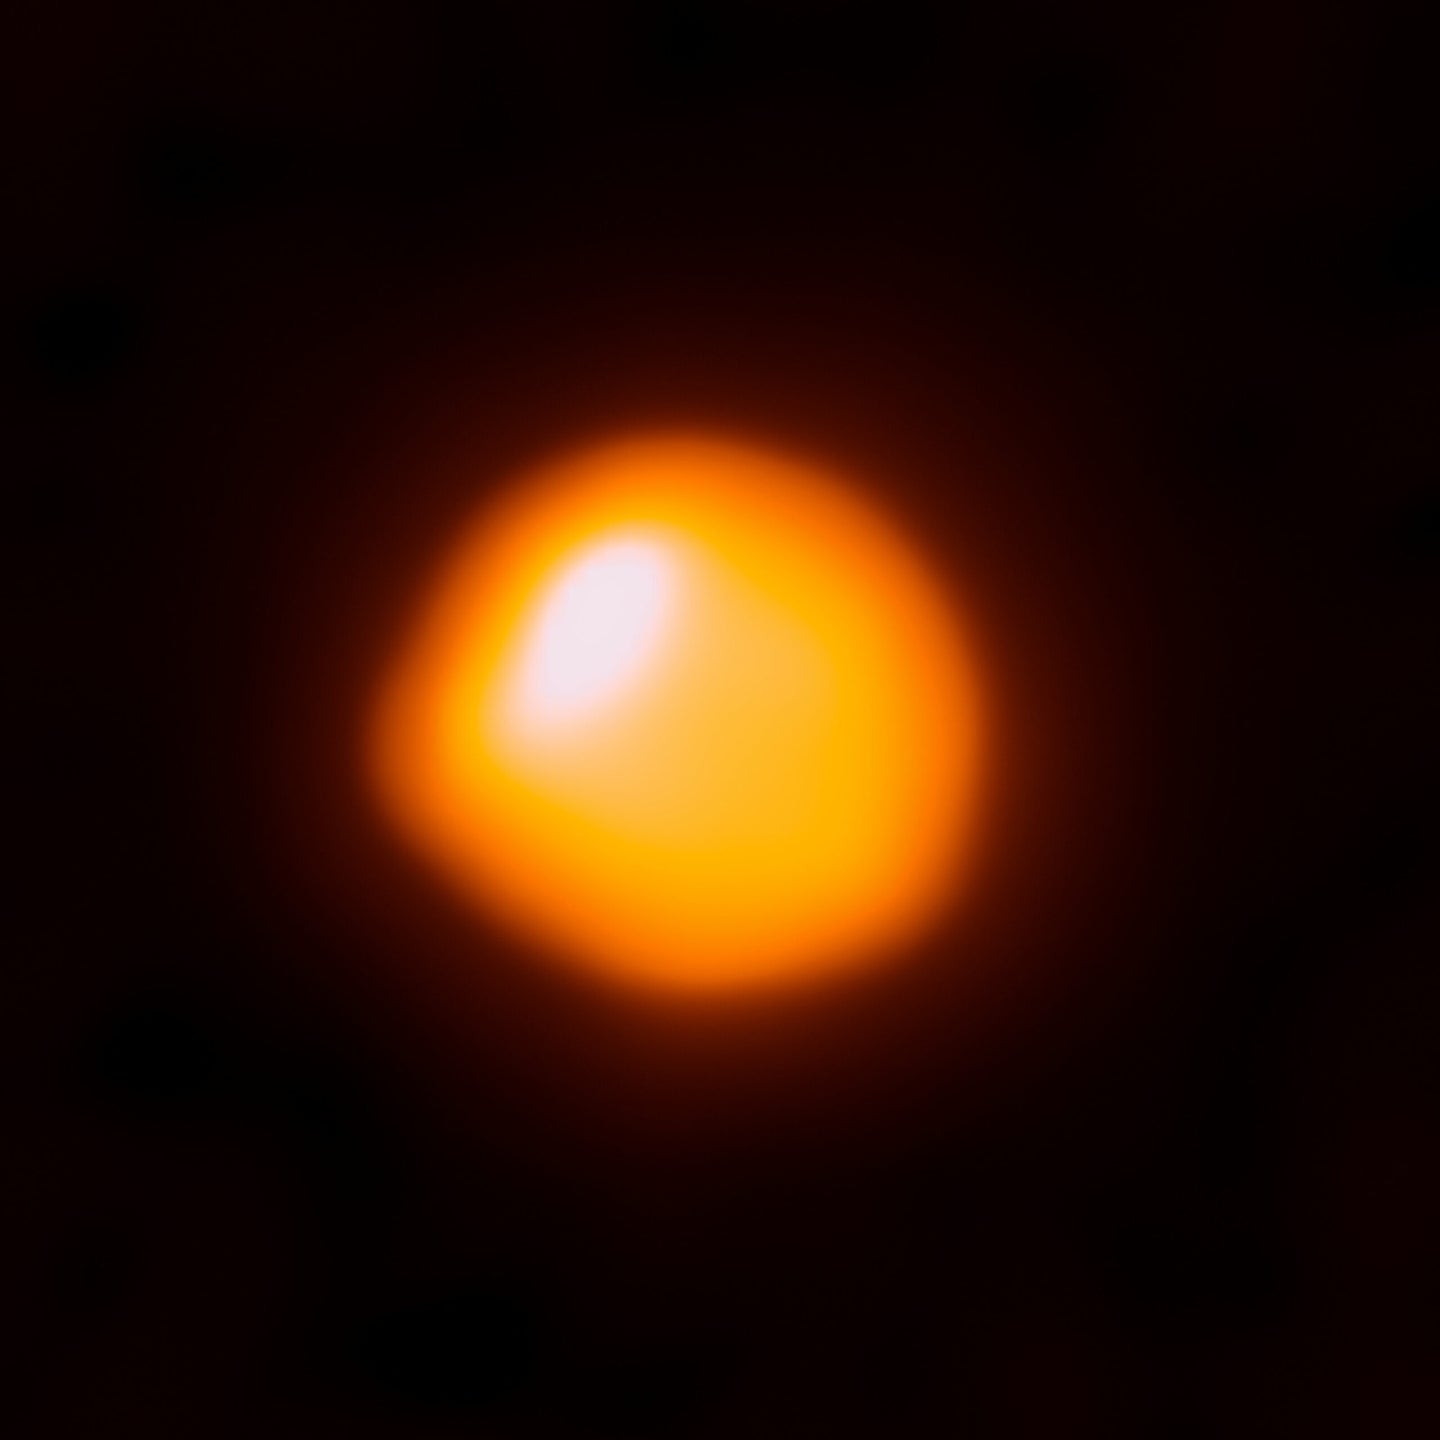 an orange star